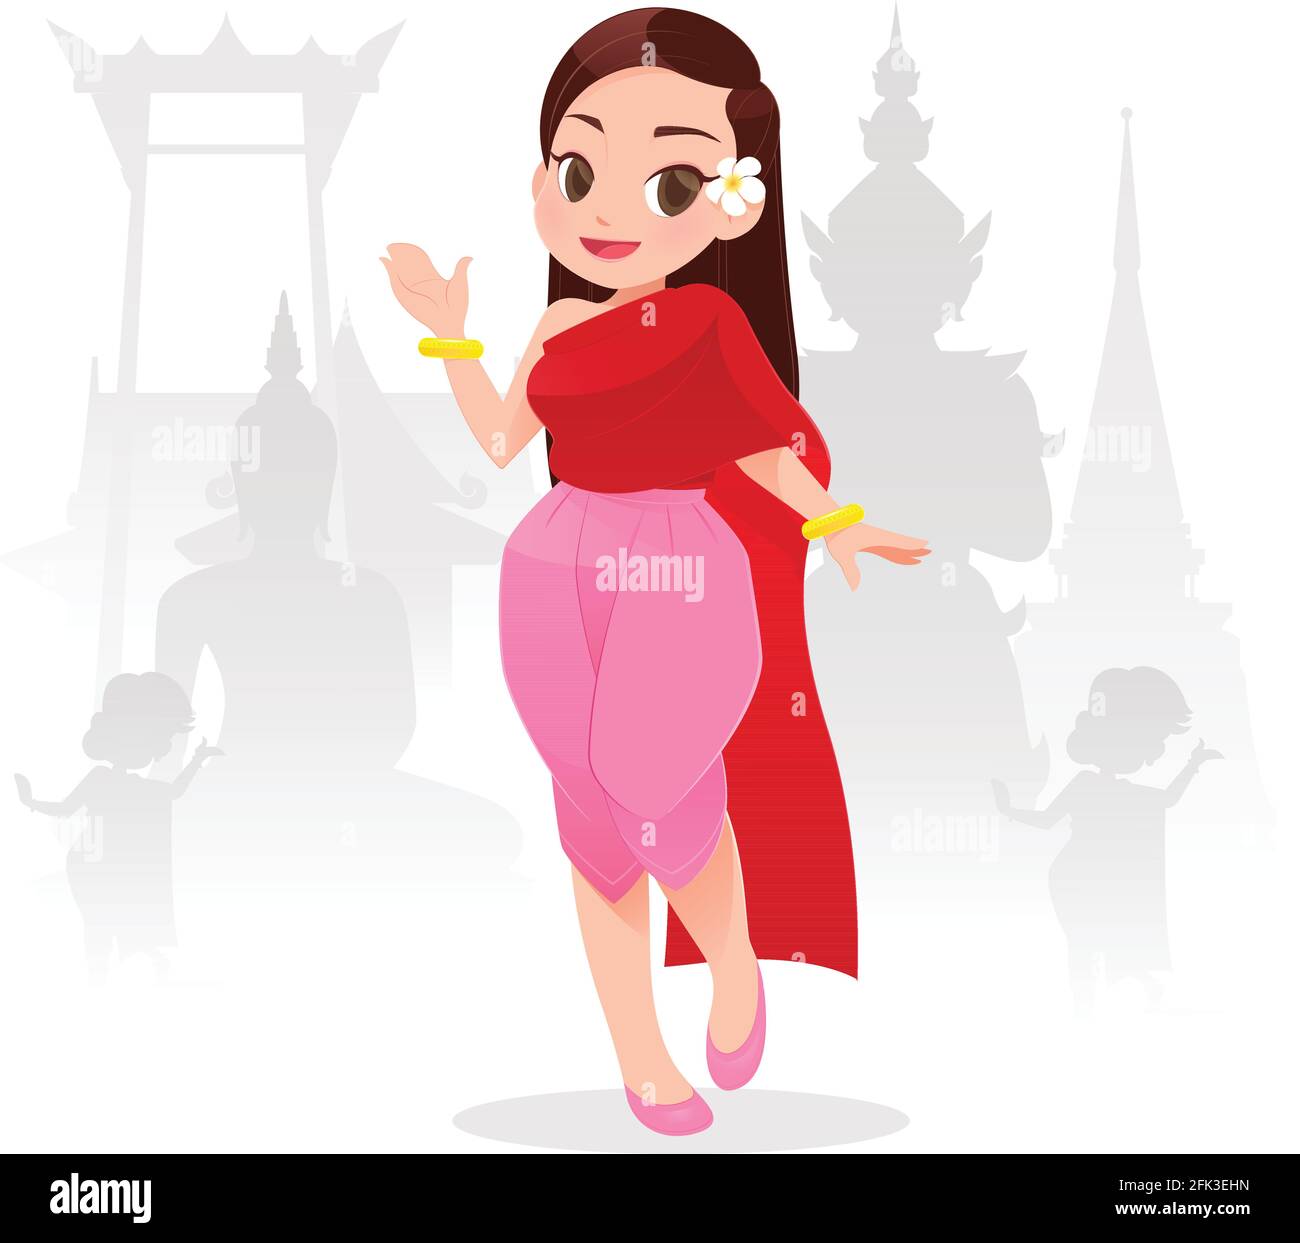 Illustration thailändische Frauen in thailändischer Tracht, traditionelle südostasiatische Tracht, Reisen, Vektor-Cartoon Stock Vektor